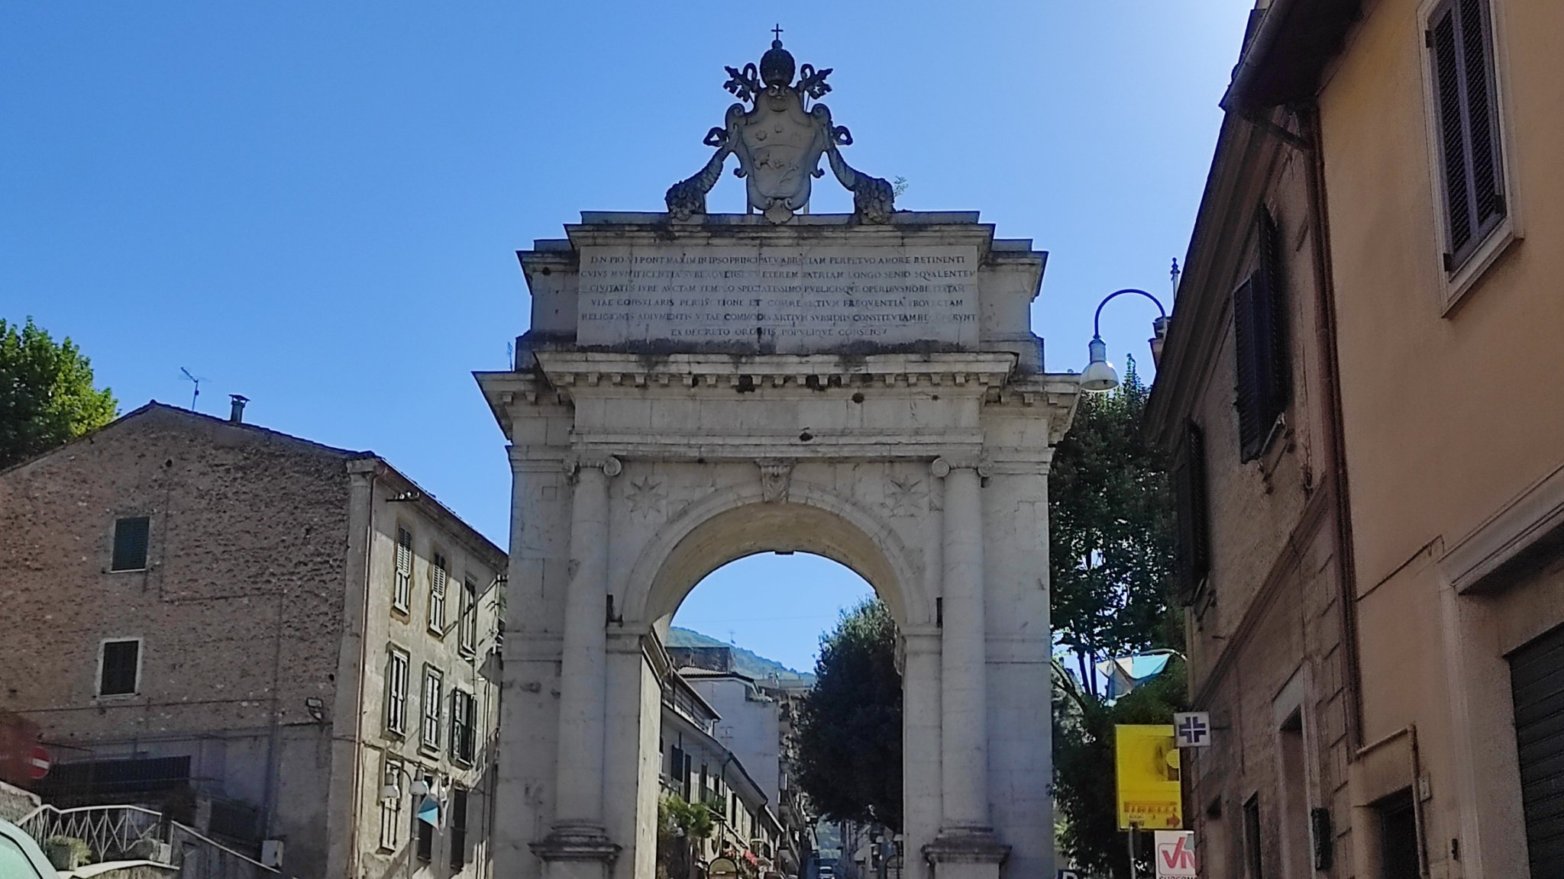 Arco trionfale di Subiaco, inaugurato nel 1789